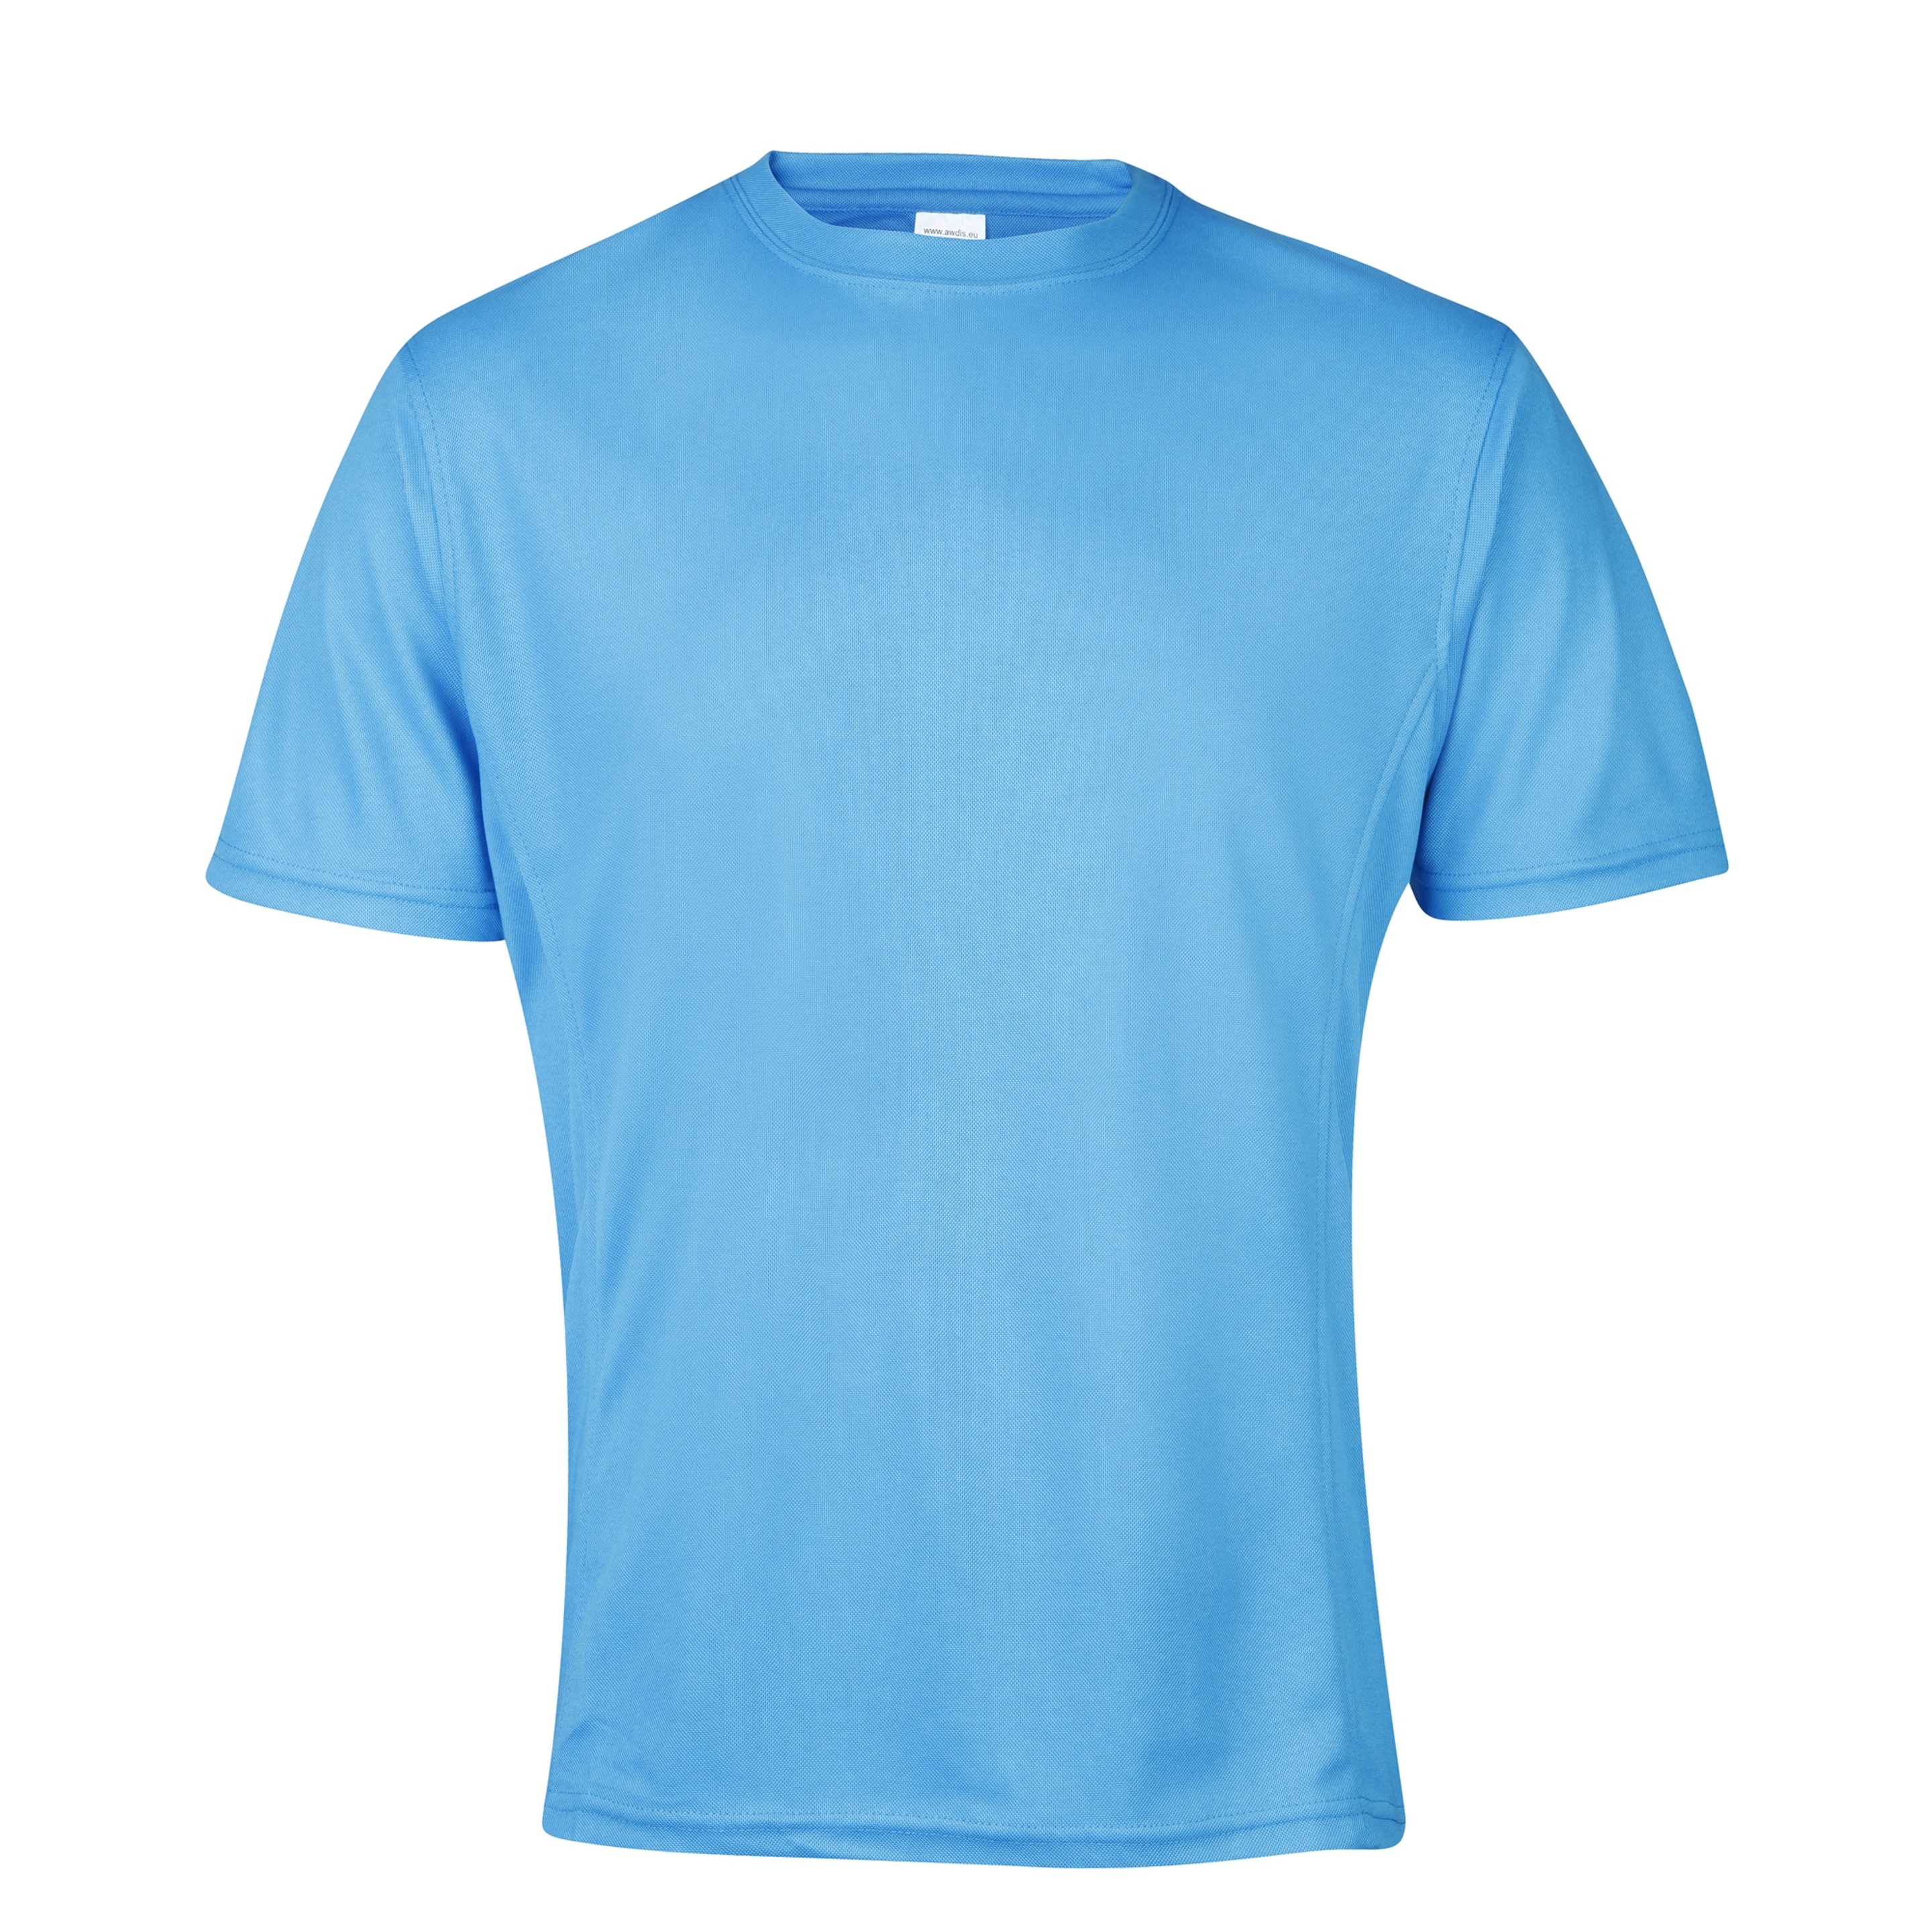 Camiseta De Deporte/ejercicio/entrenamiento Transpirable Supercool Awdis